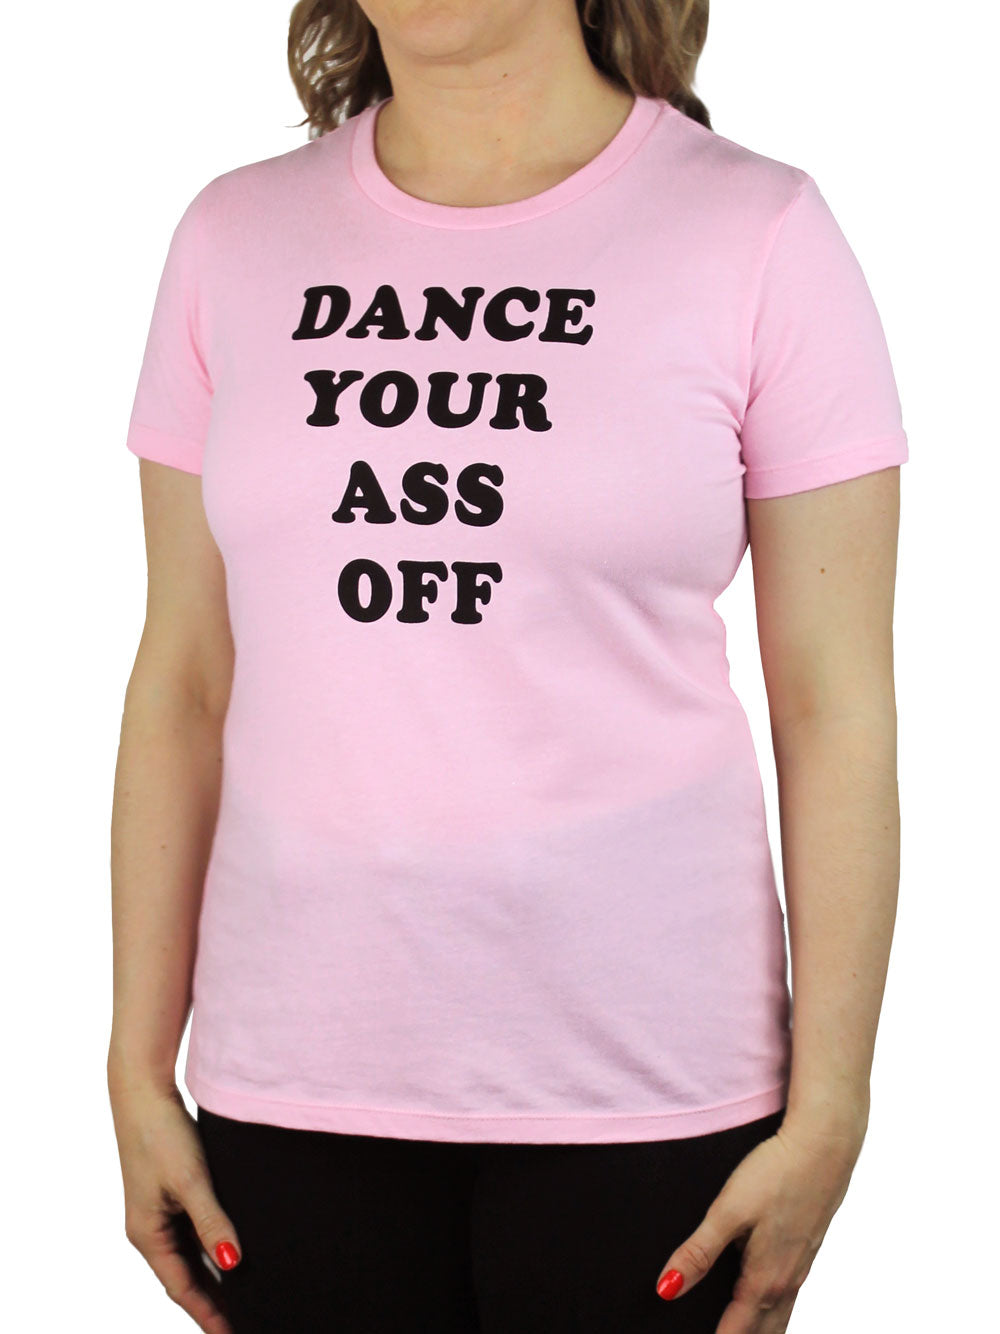 Dance Your Ass Off Shirt 3/4 View